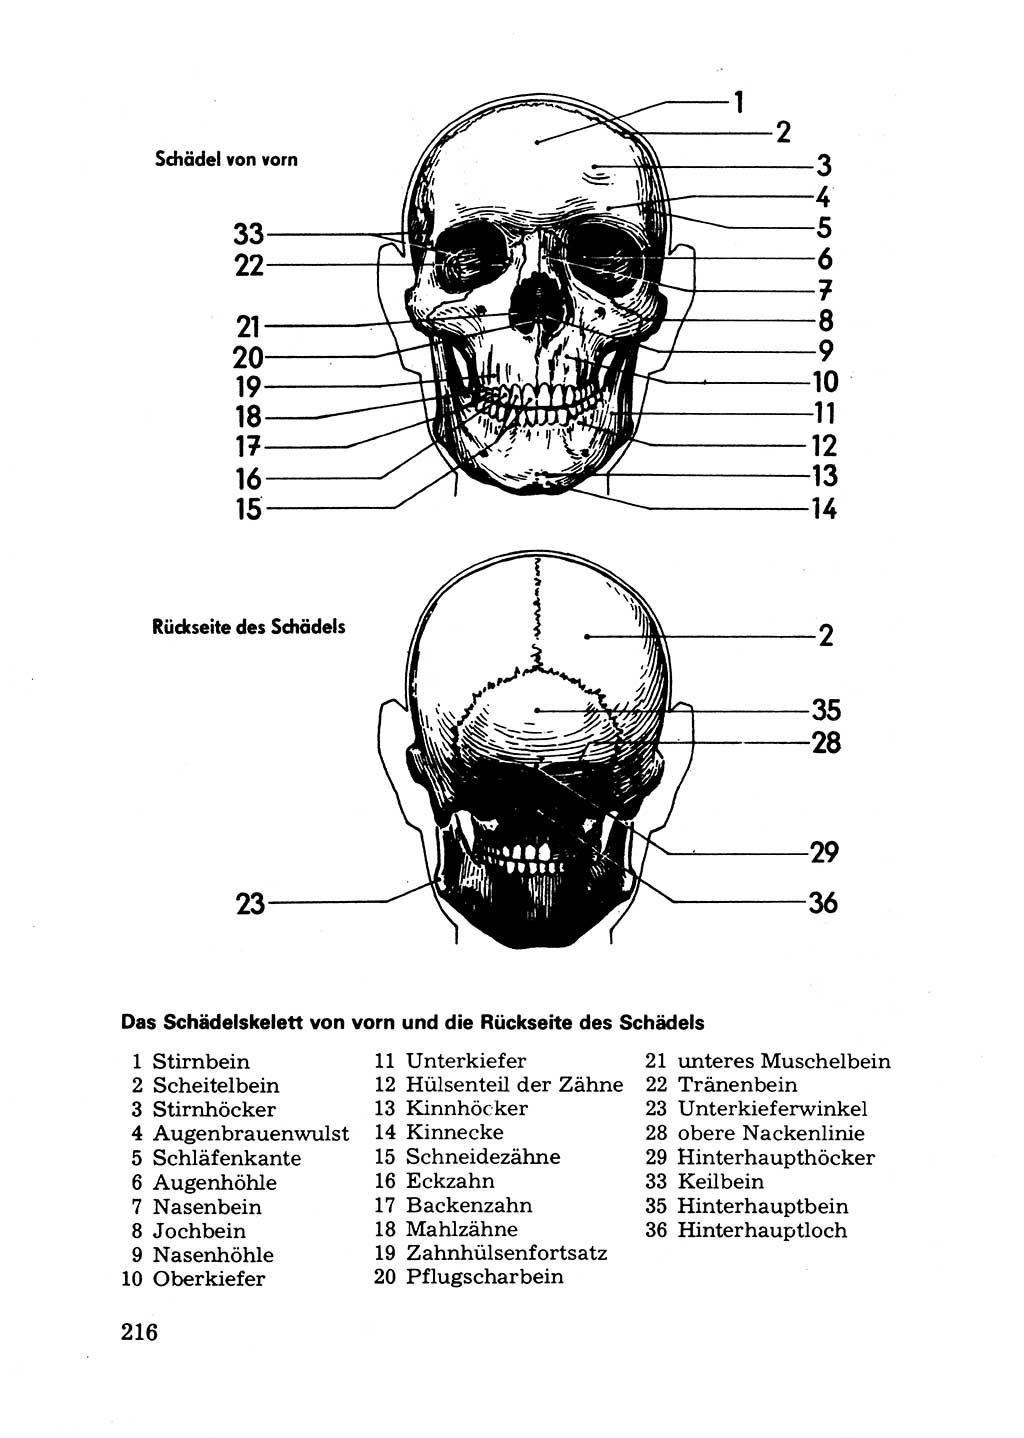 Das subjektive Porträt [Deutsche Demokratische Republik (DDR)] 1981, Seite 216 (Subj. Port. DDR 1981, S. 216)